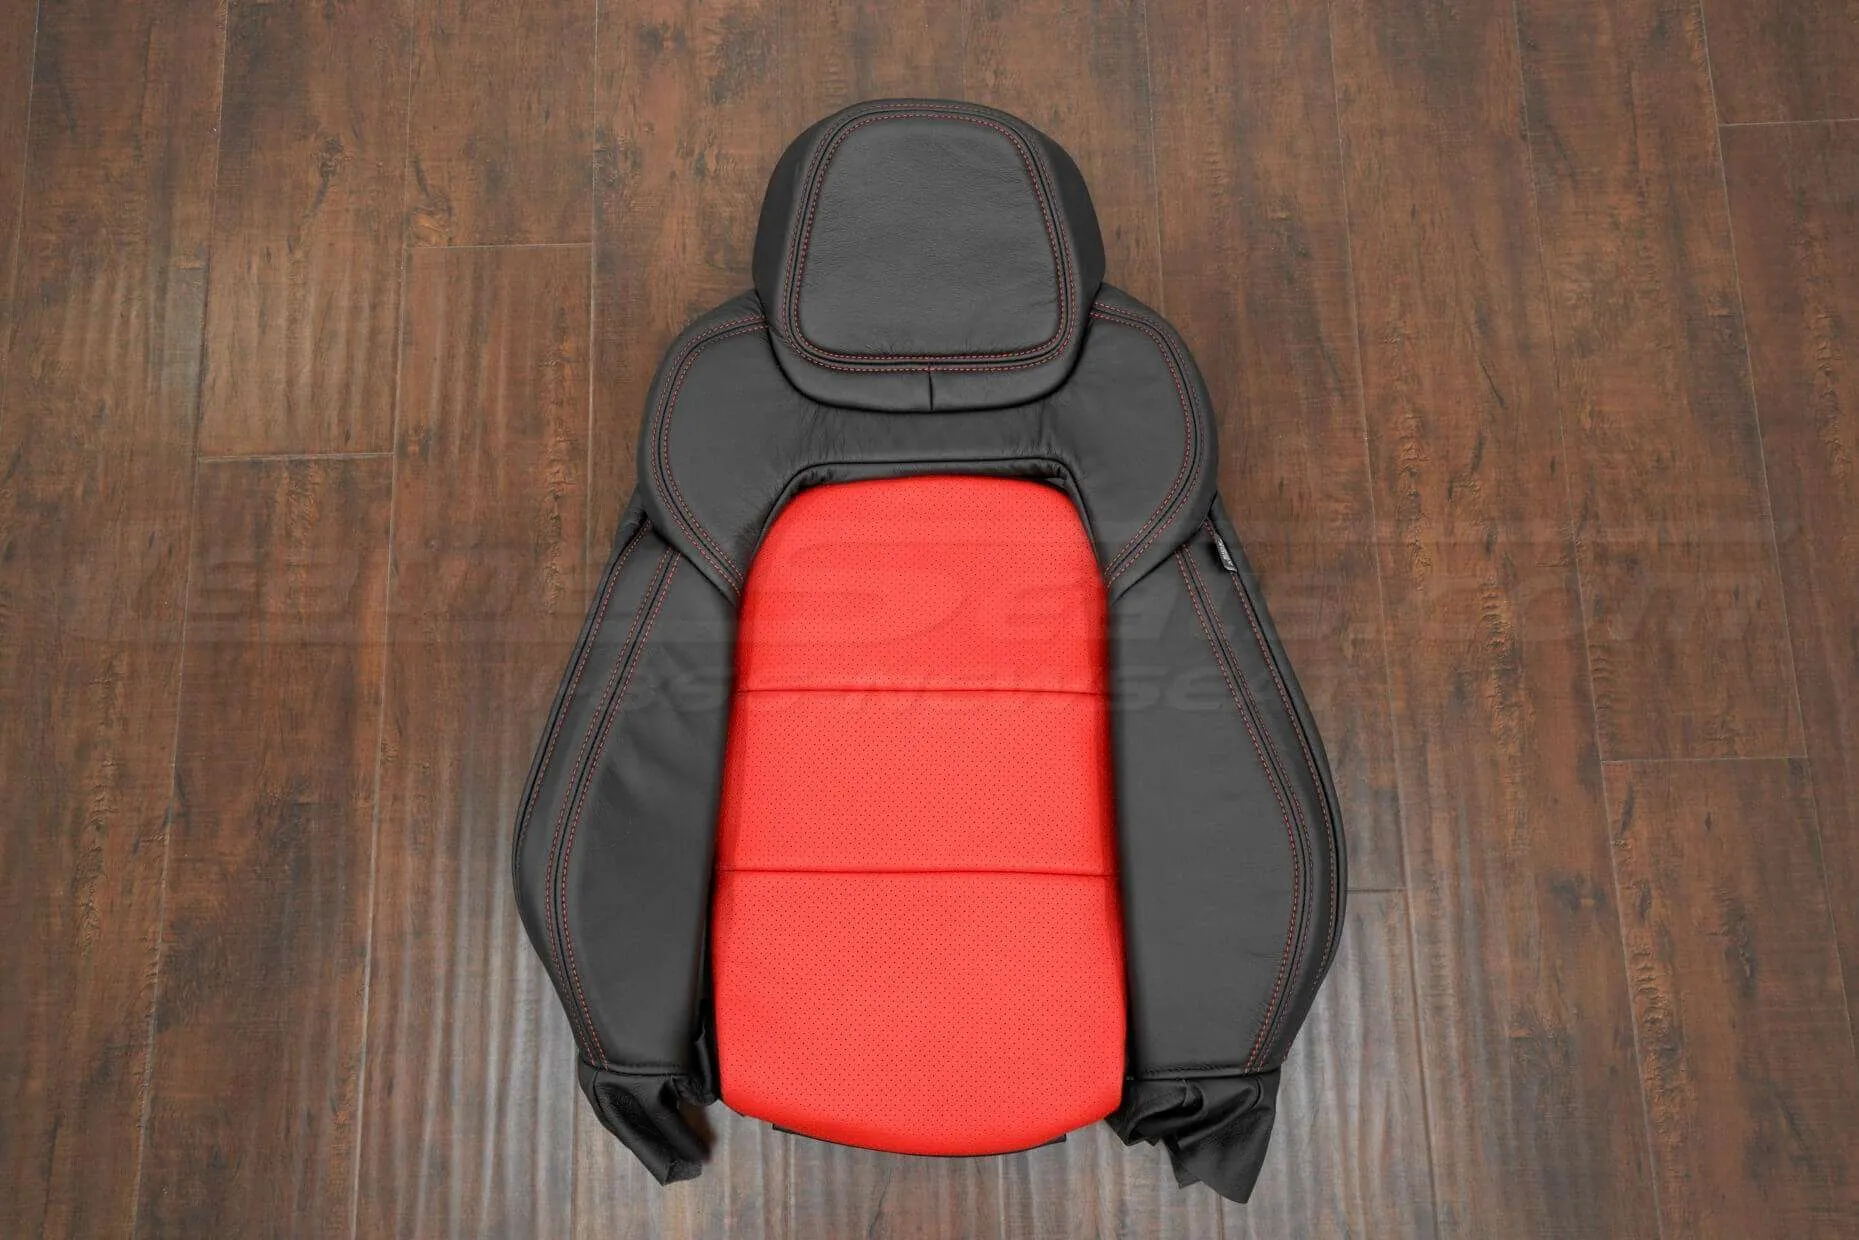 05-13 Chevrolet Corvette Upholstery Kit - Black & Bright Red - Front seat backrest